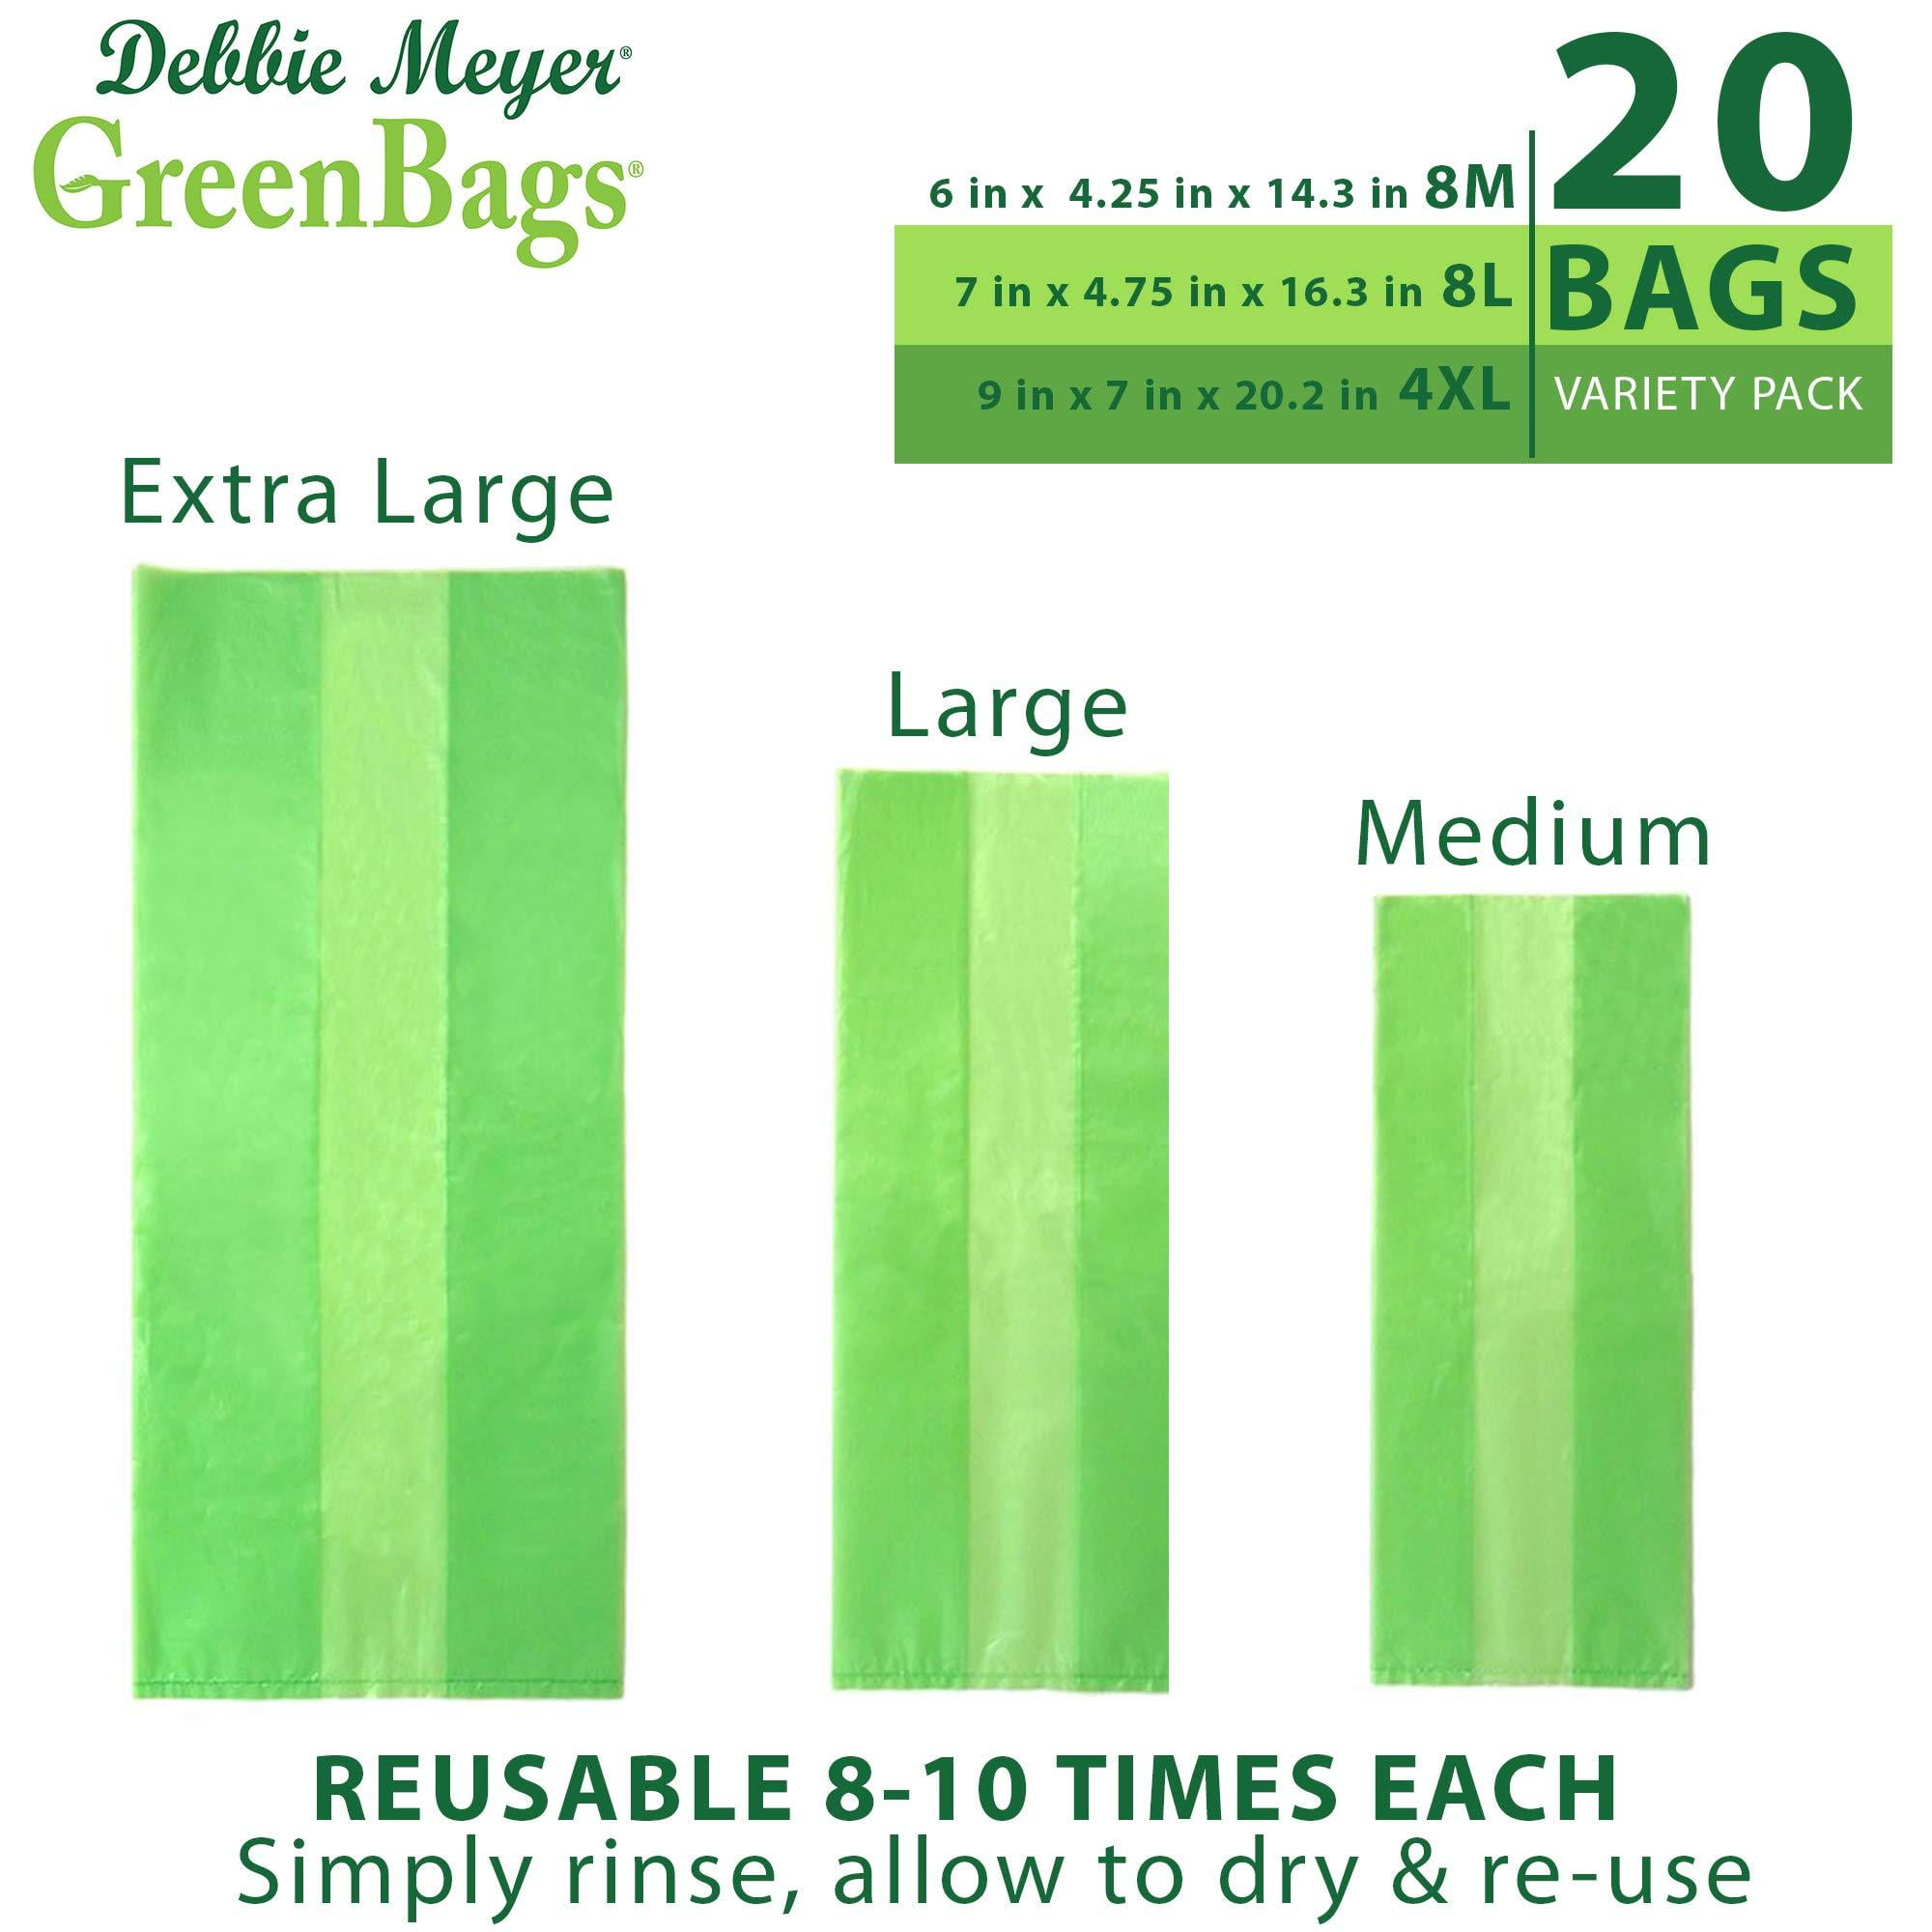 Debbie Meyer Green Bags Variety Pack Green Bags 20 Ea